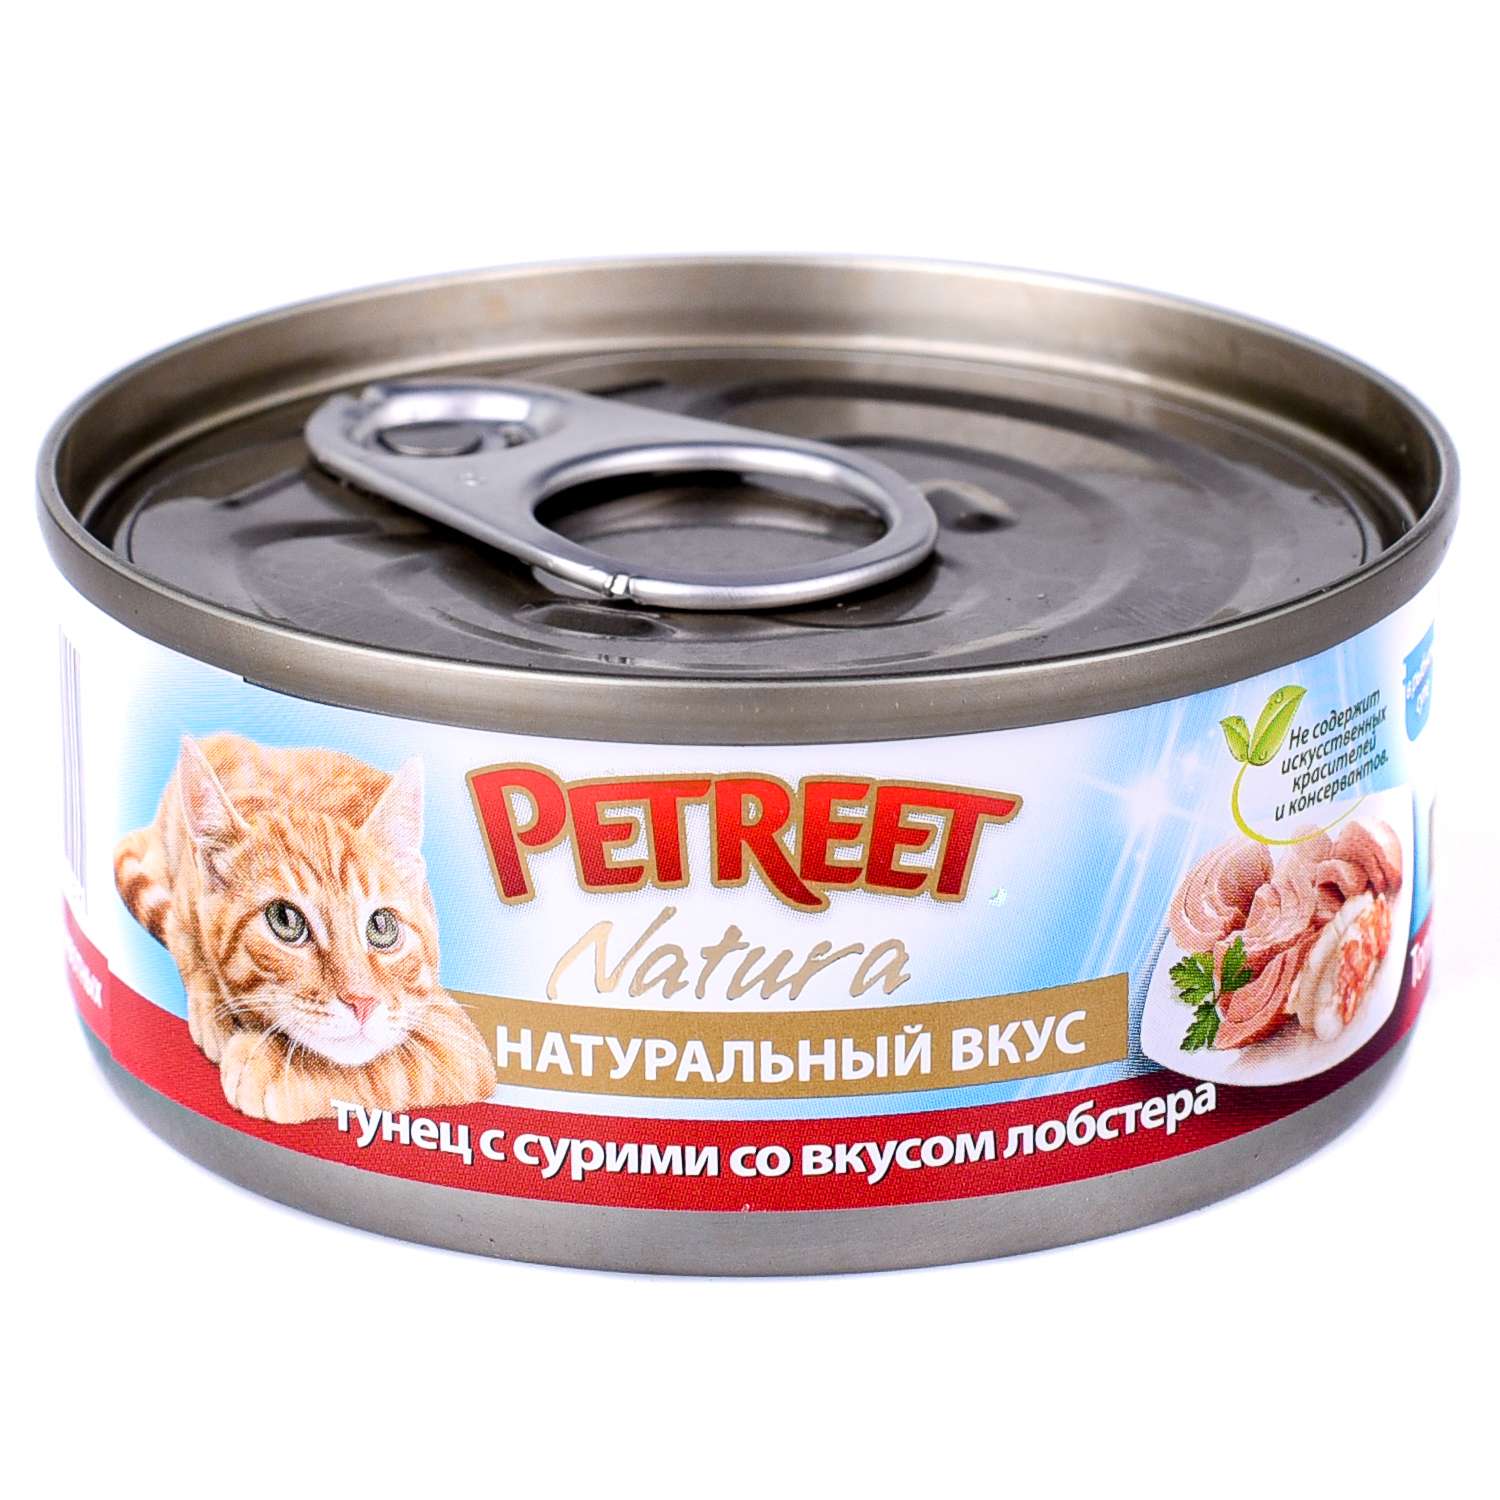 Корм влажный для кошек Petreet 70г кусочки тунца с сурими со вкусом лобстера в рыбном супе консервированный - фото 1